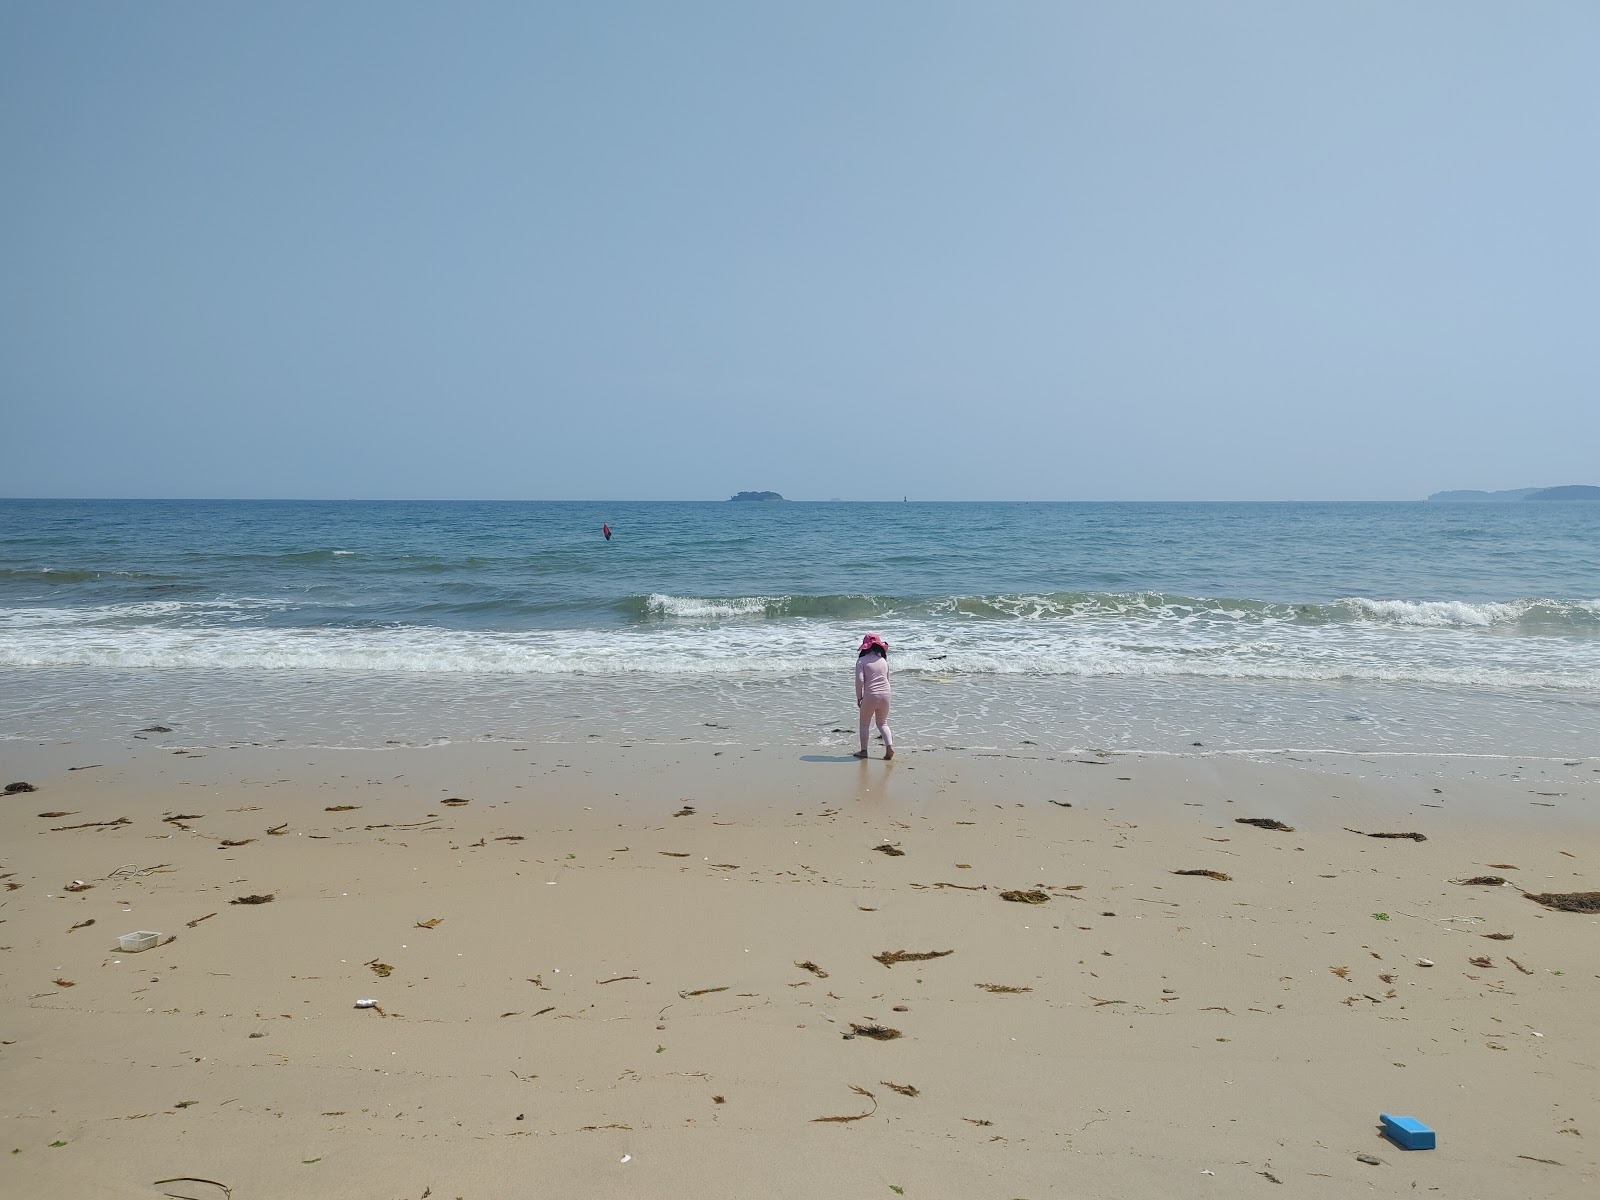 Fotografie cu Obongsan Beach sprijinit de stânci